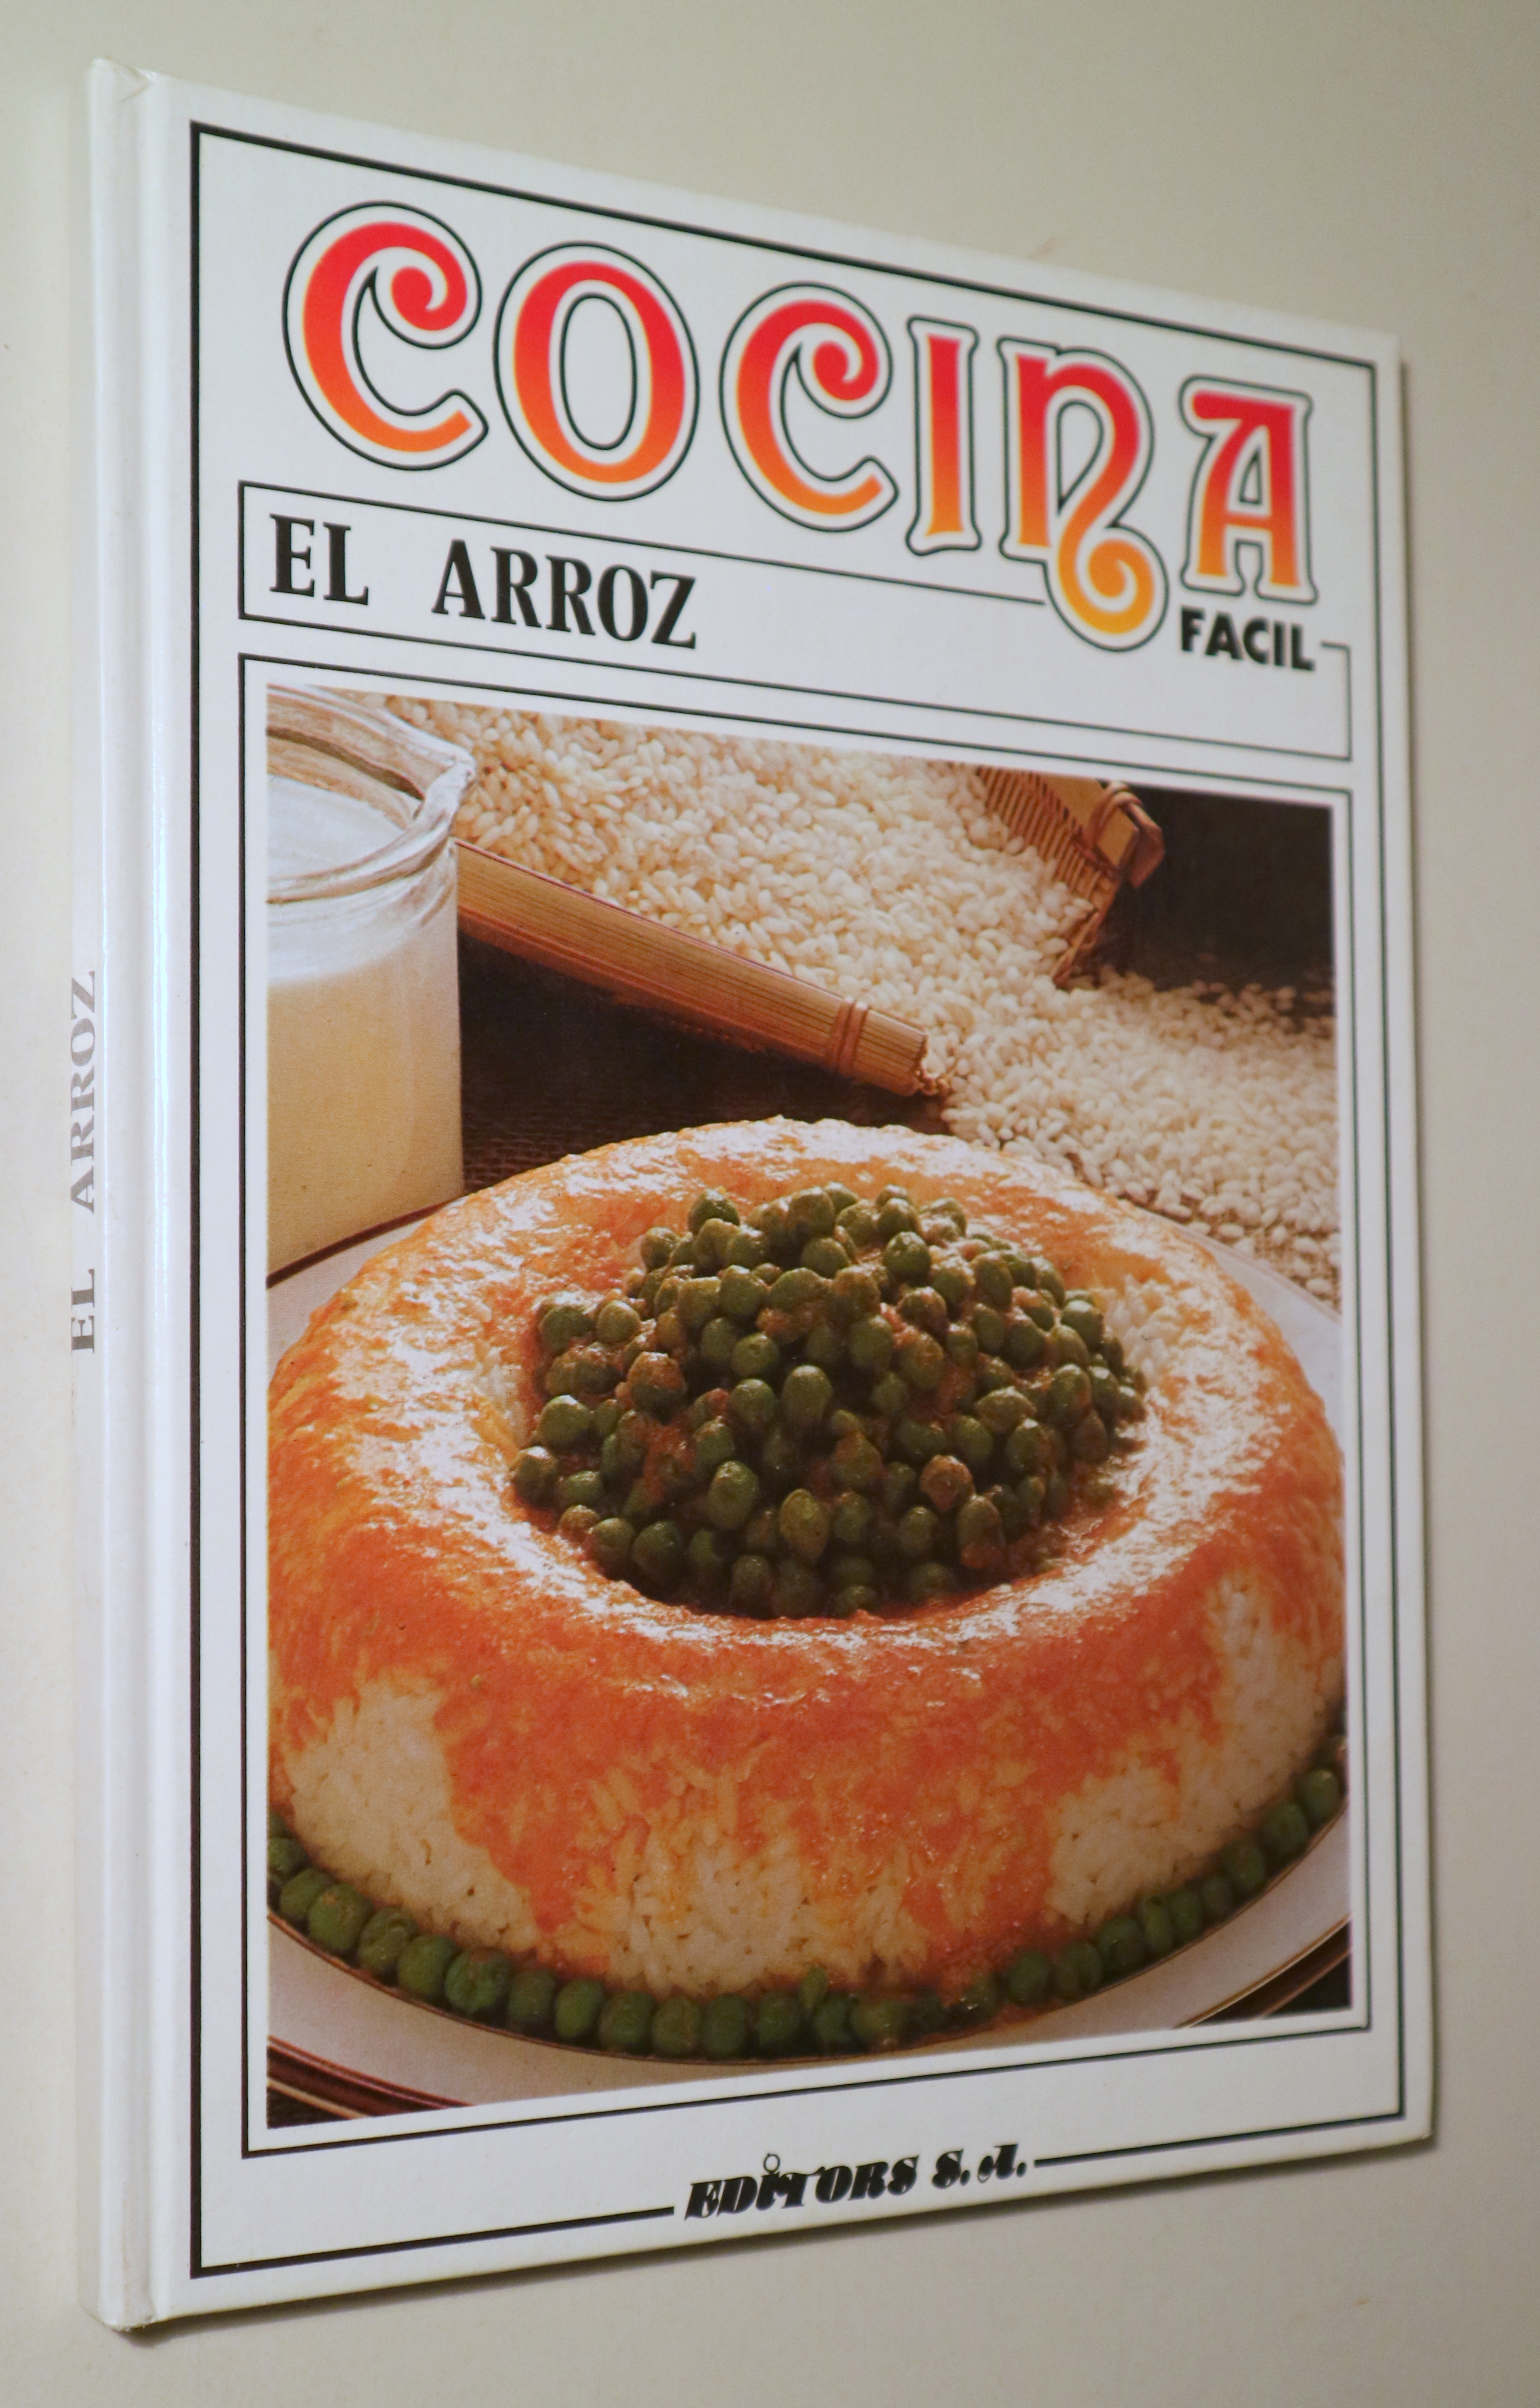 COCINA FÁCIL. El arroz - Barcelona 1985 - Ilustrado